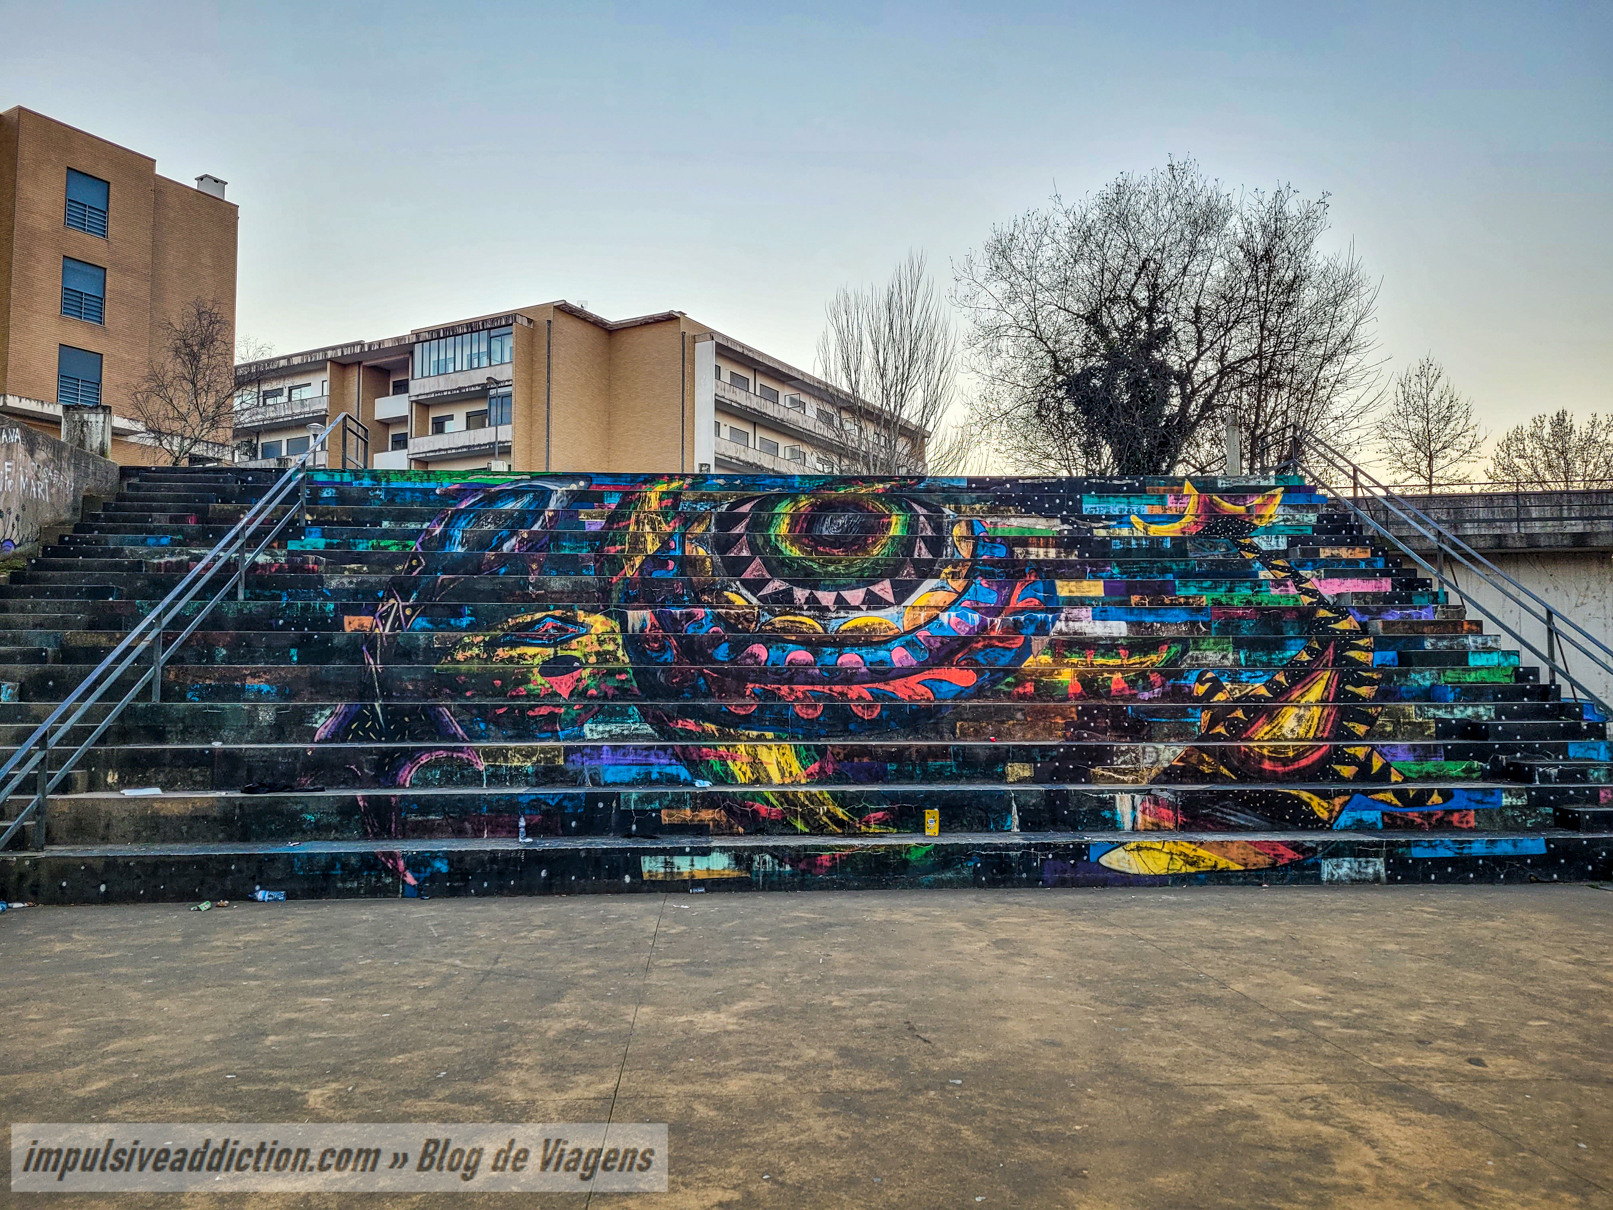 Arte Urbana do Parque da Cidade de Fafe